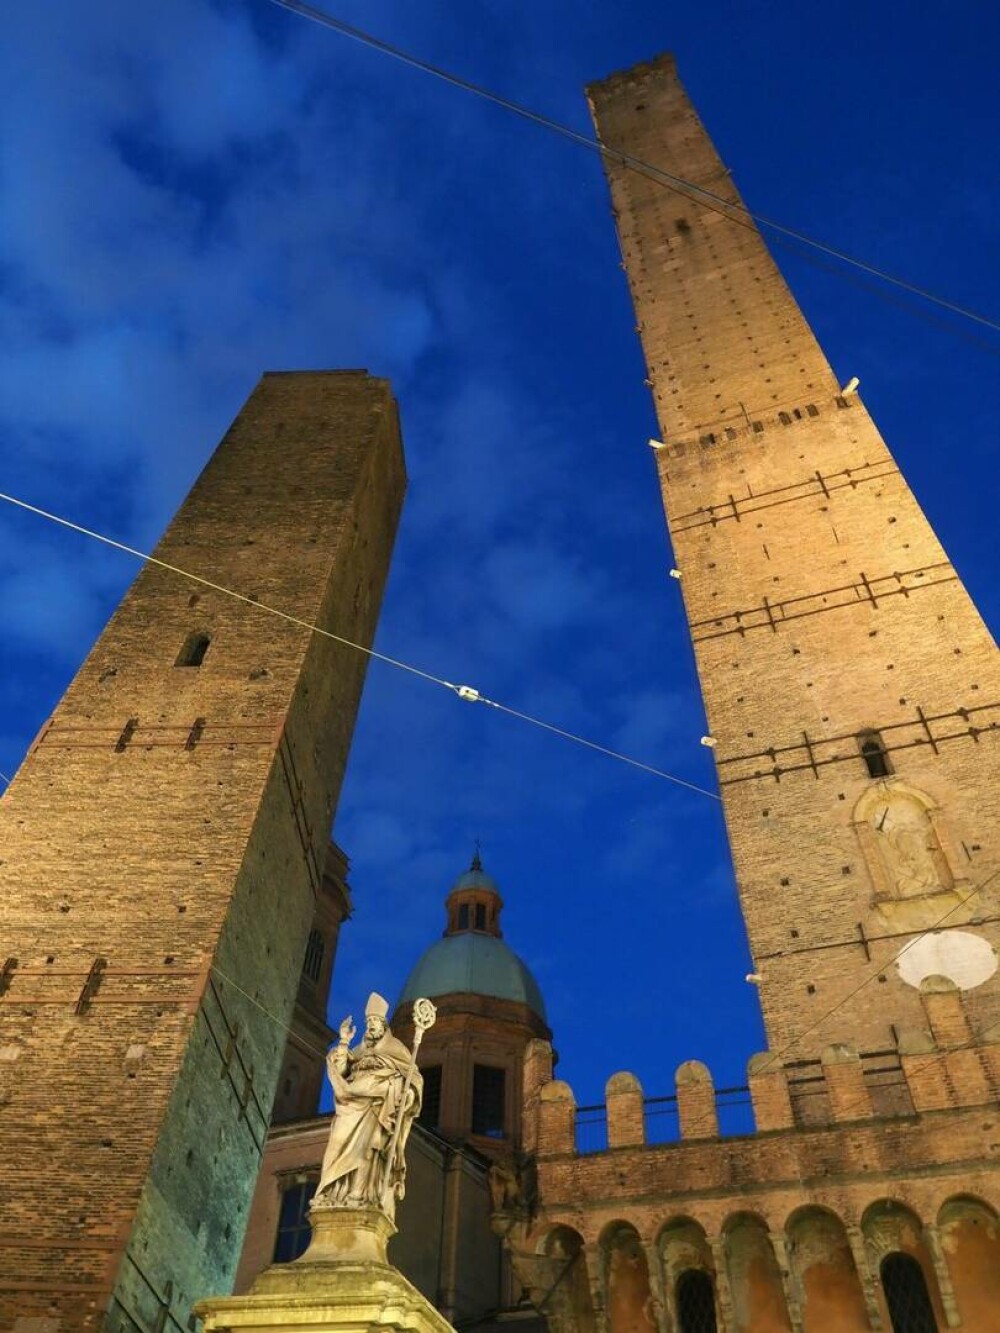 Turnul înclinat din Italia care s-ar putea prăbuși. Oficialii încearcă să-l mențină ridicat | GALERIE FOTO - Imaginea 7